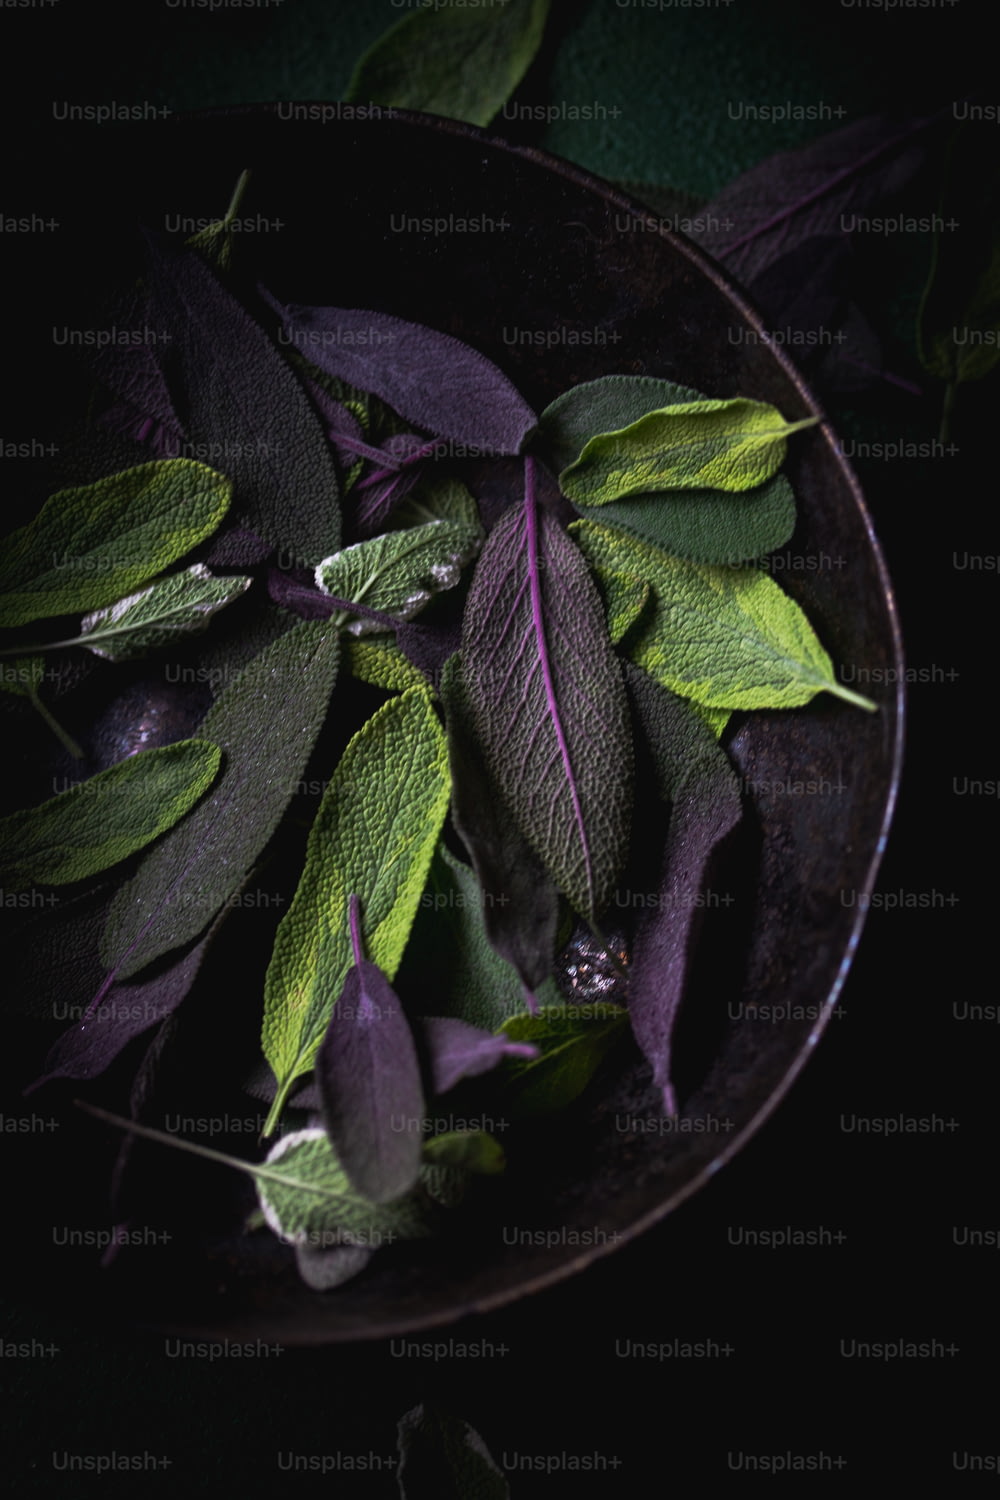 테이블 위에 녹색 잎으로 채워진 검은 그릇